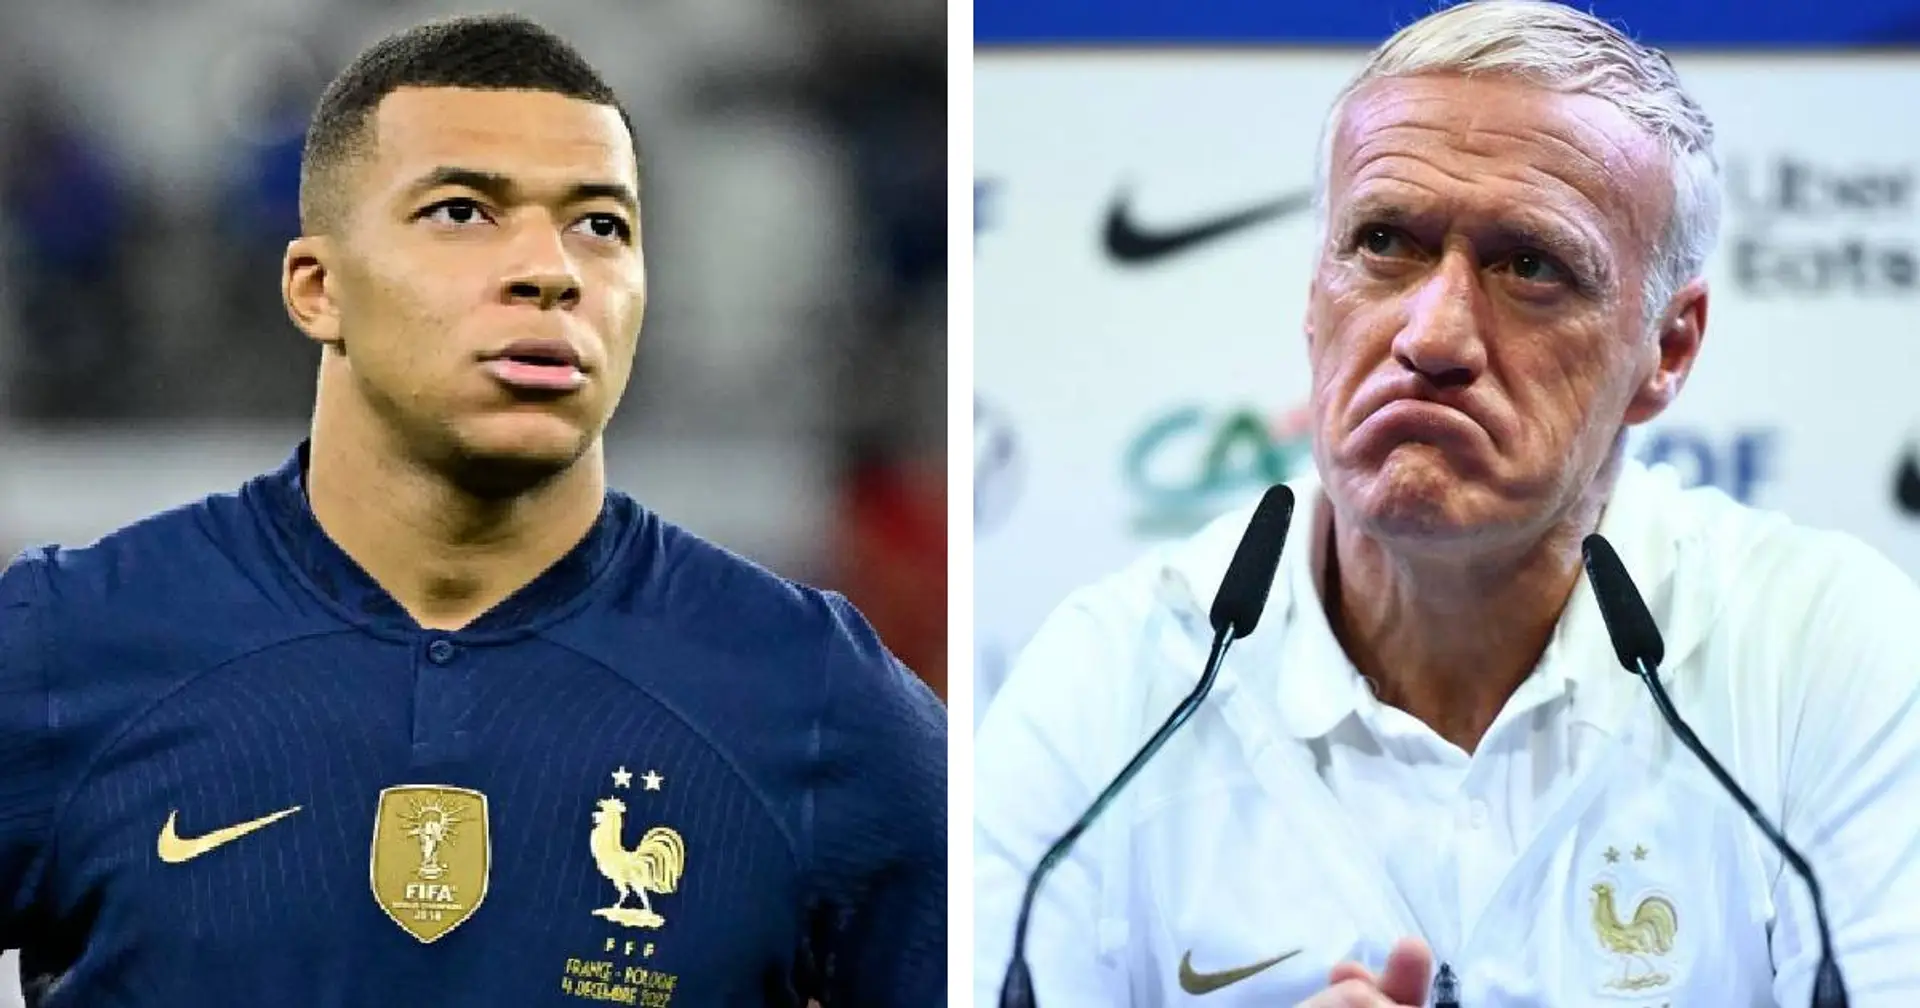 Riolo donne une seule condition pour ne pas voir la France remporter l'Euro 2024 - ca concerne Mbappé